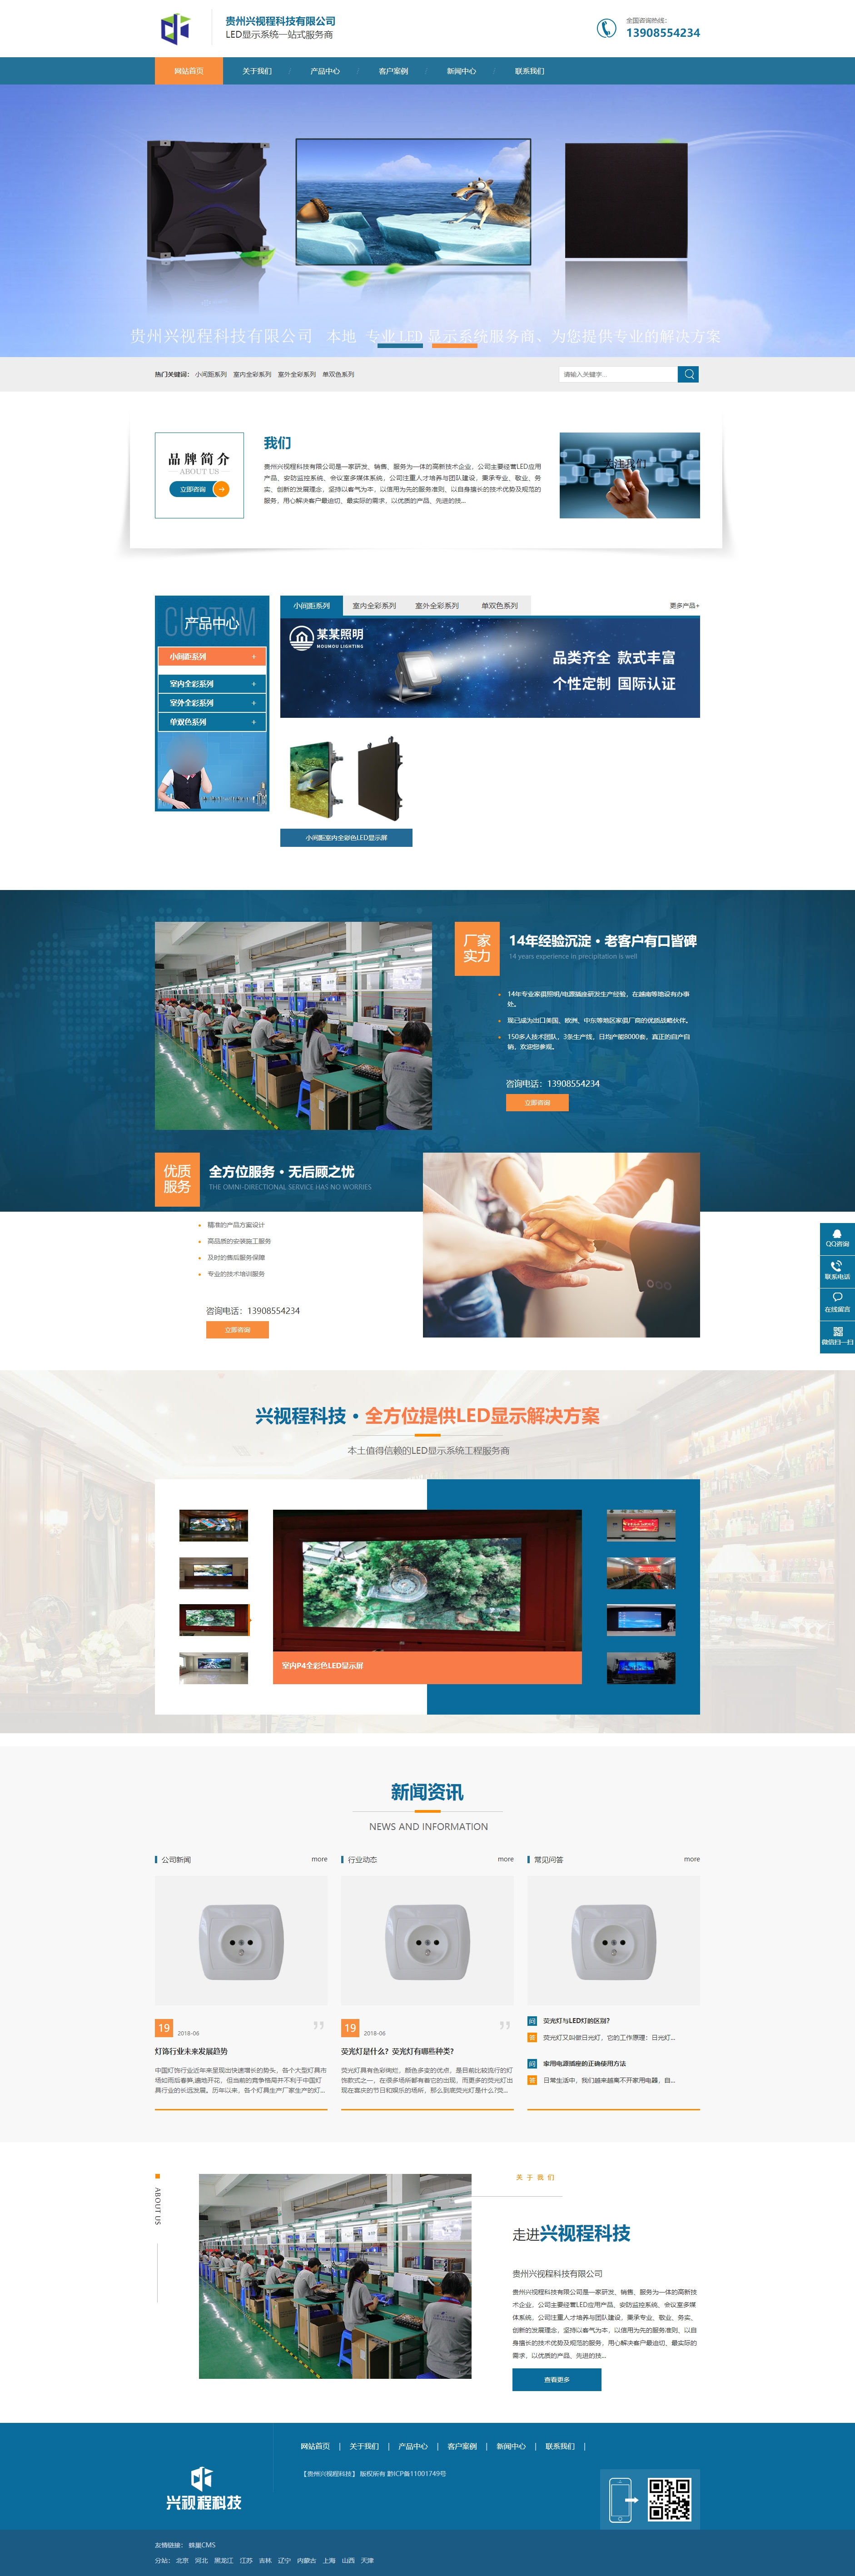 六枝特贵州兴视程科技有限公司 网站正式上线